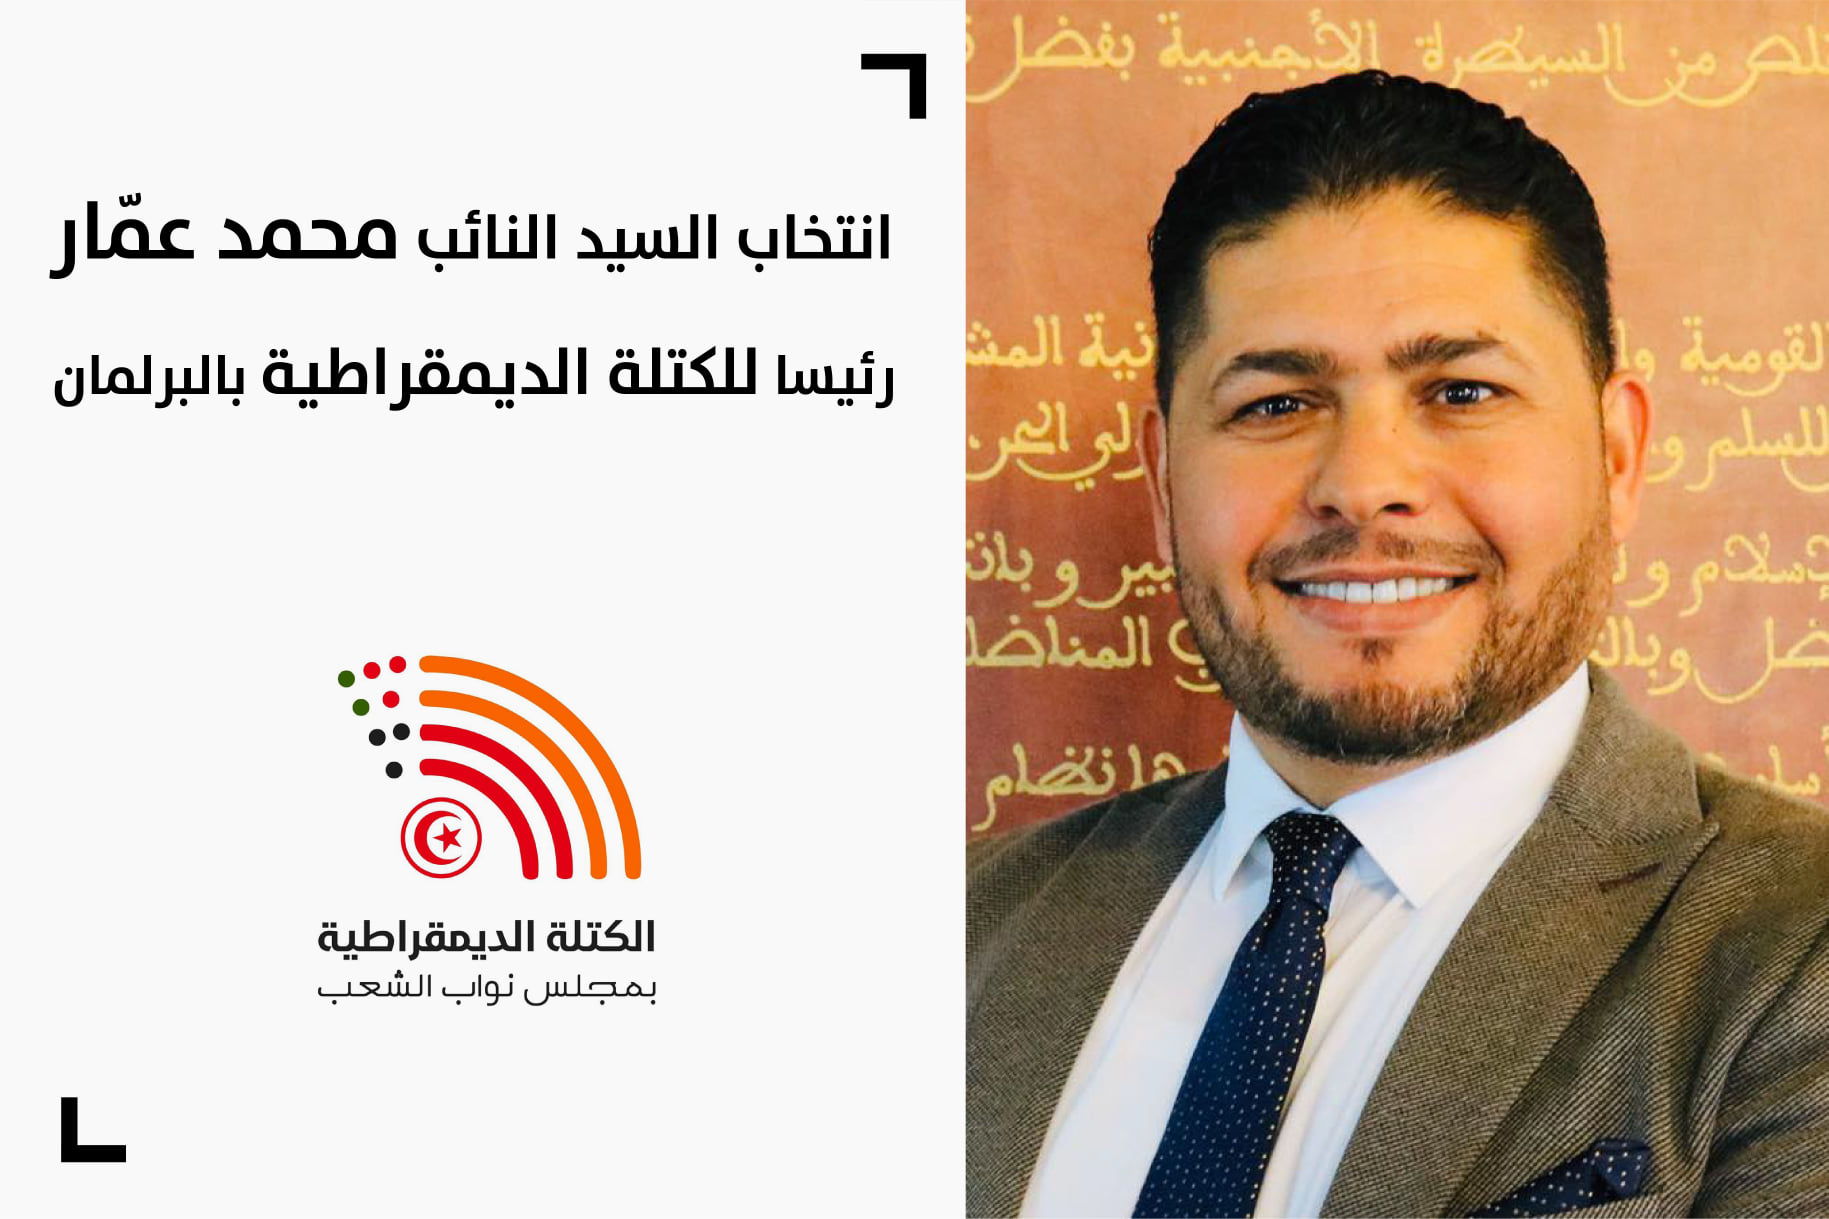 انتخاب النائب عن التيار الديمقراطي محمد عمار رئيسا للكتلة الديمقراطية بالبرلمان